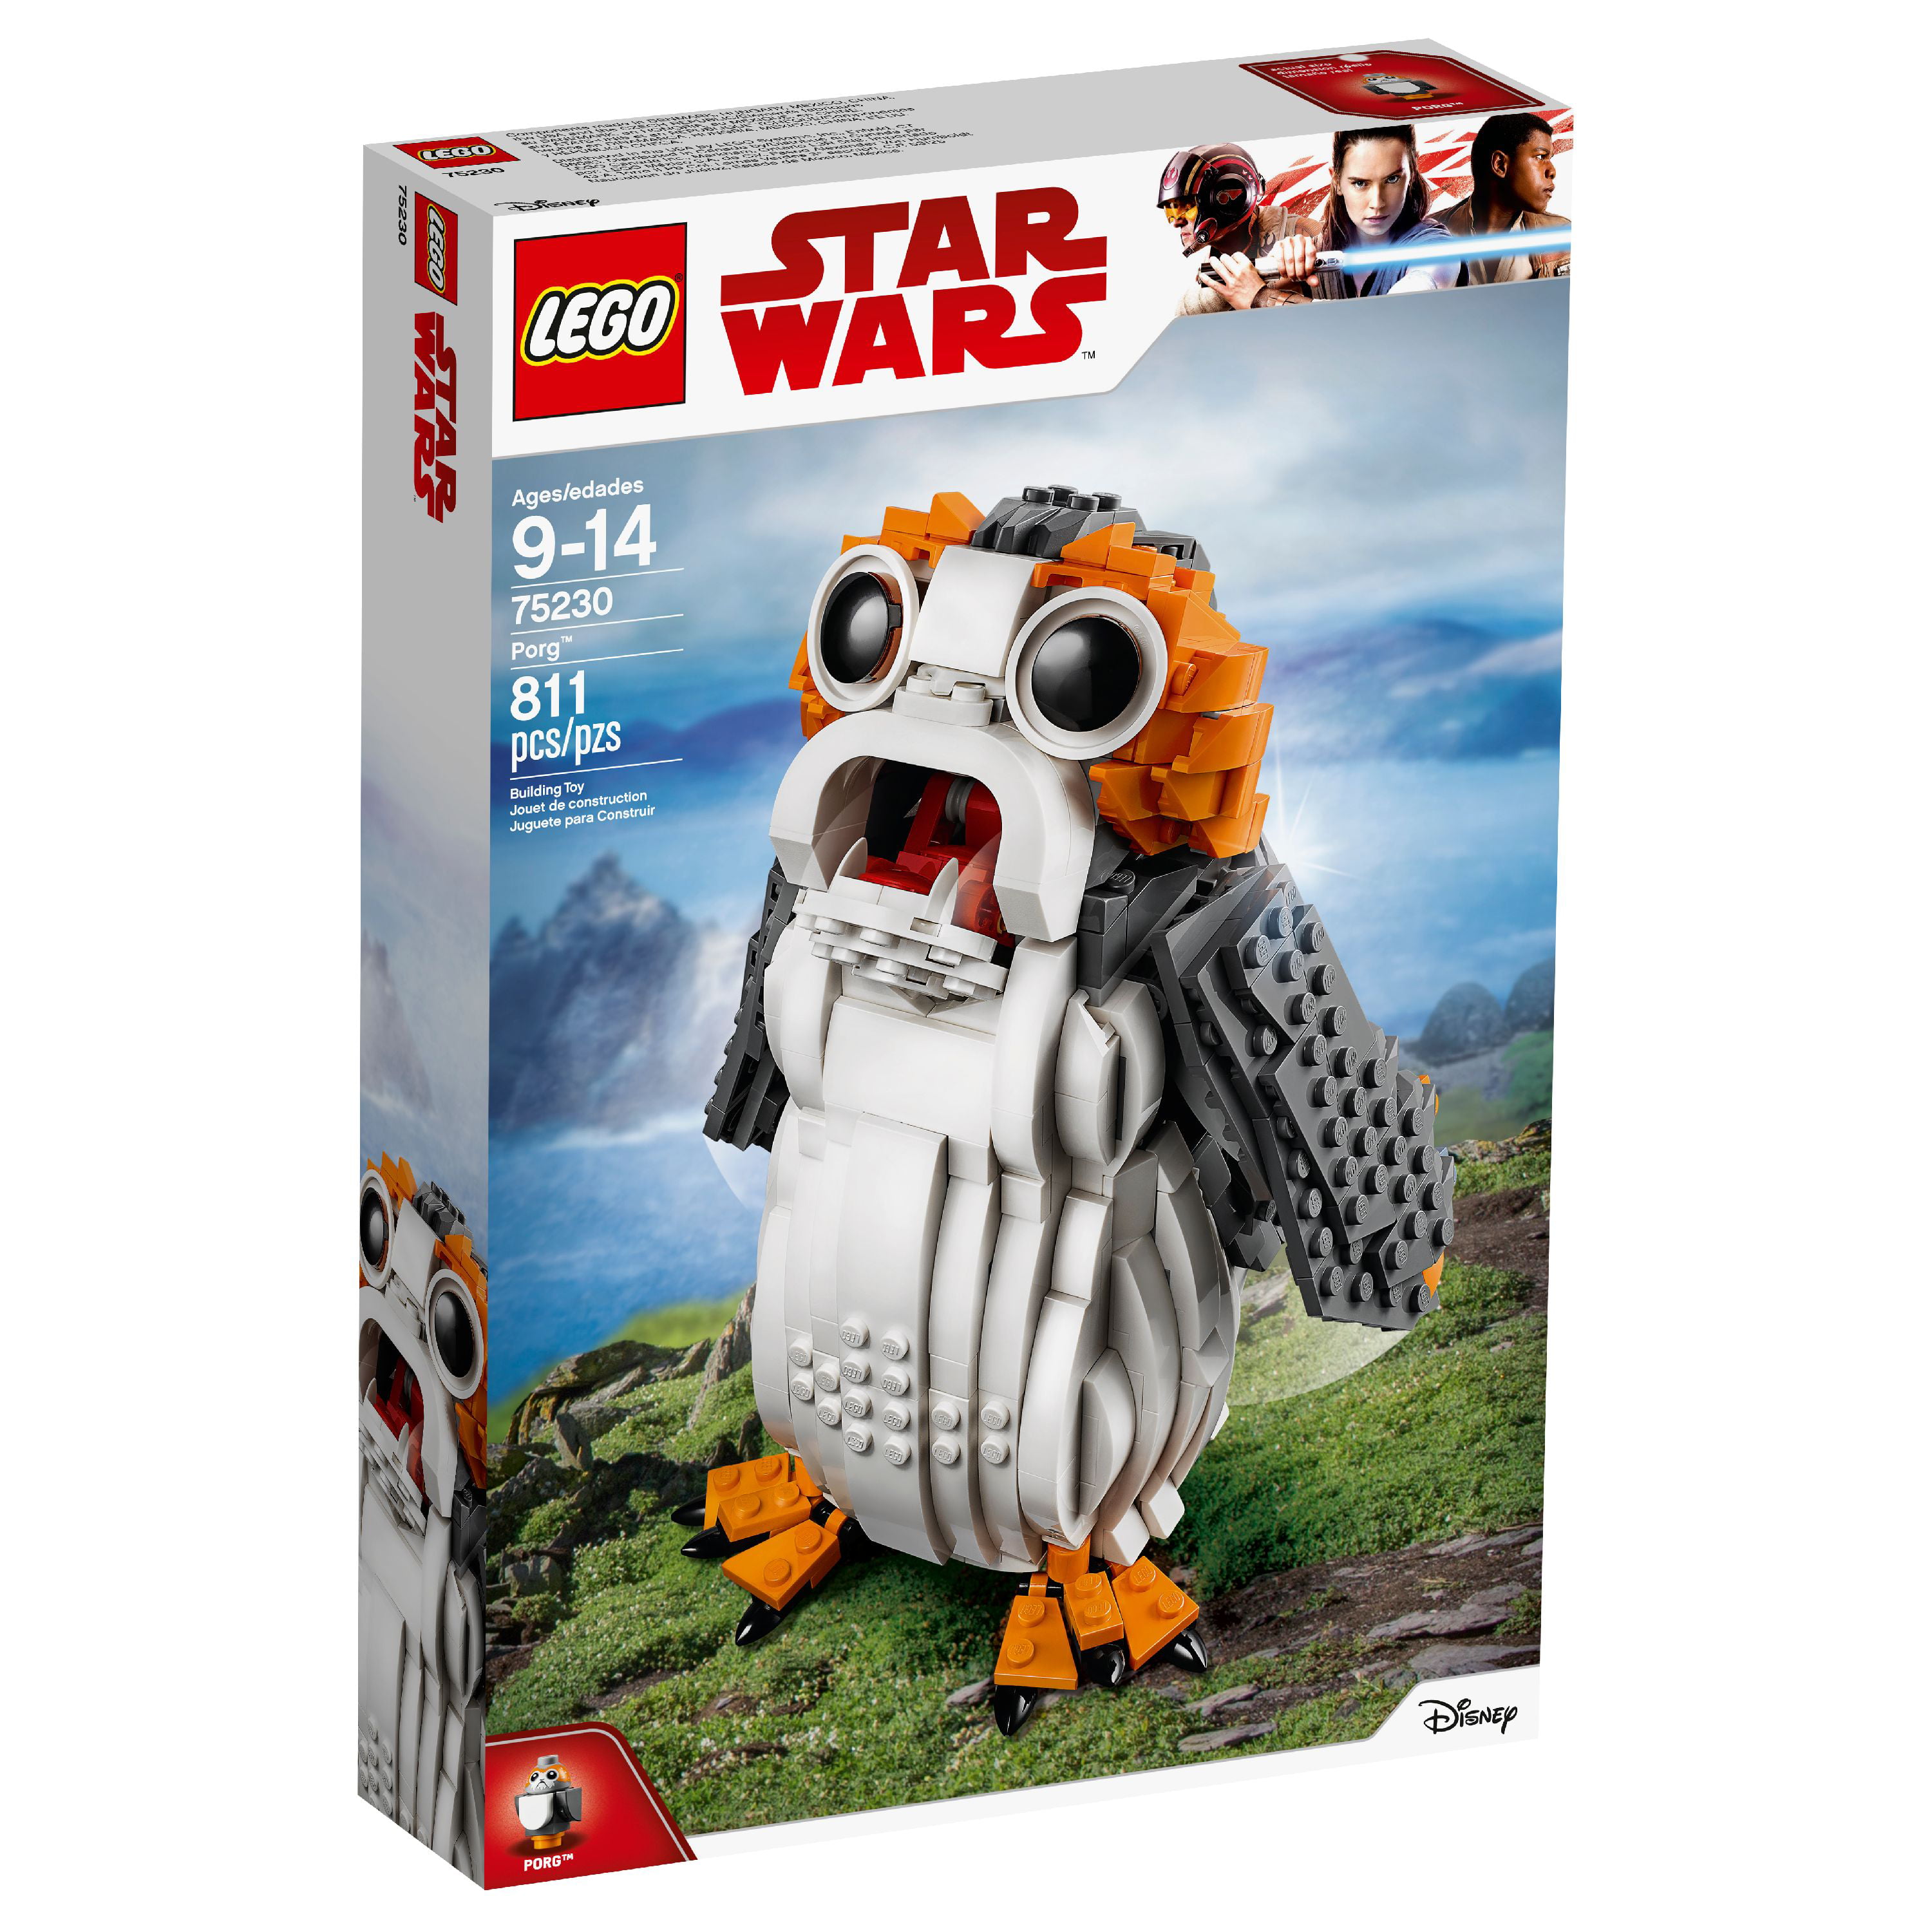 LEGO Star Wars Porg 75230 Building Set 